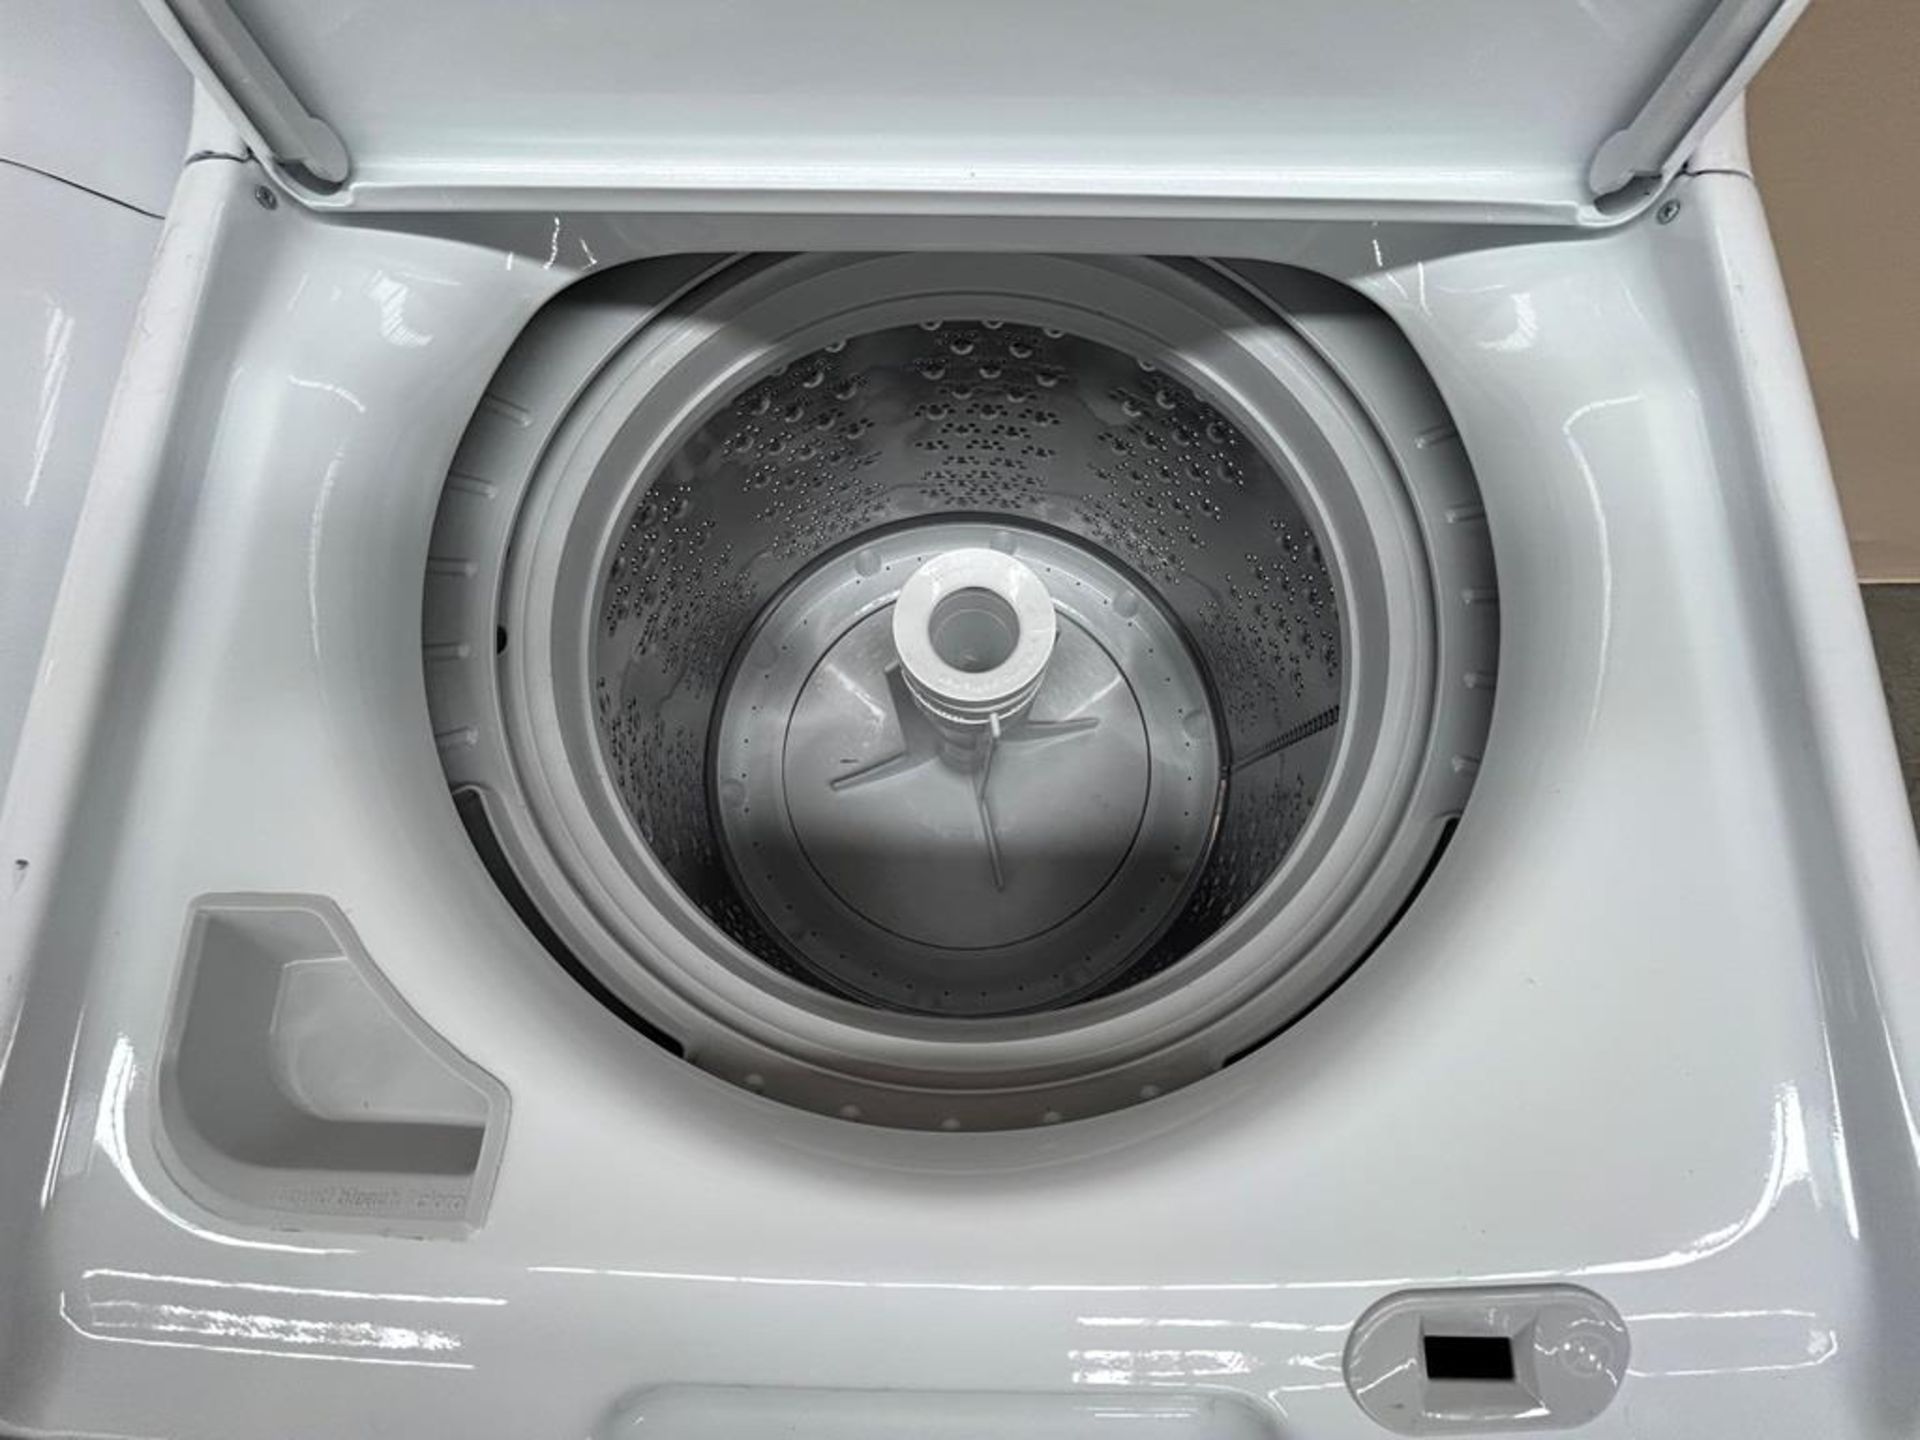 Lote de 2 lavadoras contiene: 1 Lavadora de 18 KG Marca MABE, Modelo LMA78113CBAB01, Serie S91112, - Image 4 of 6